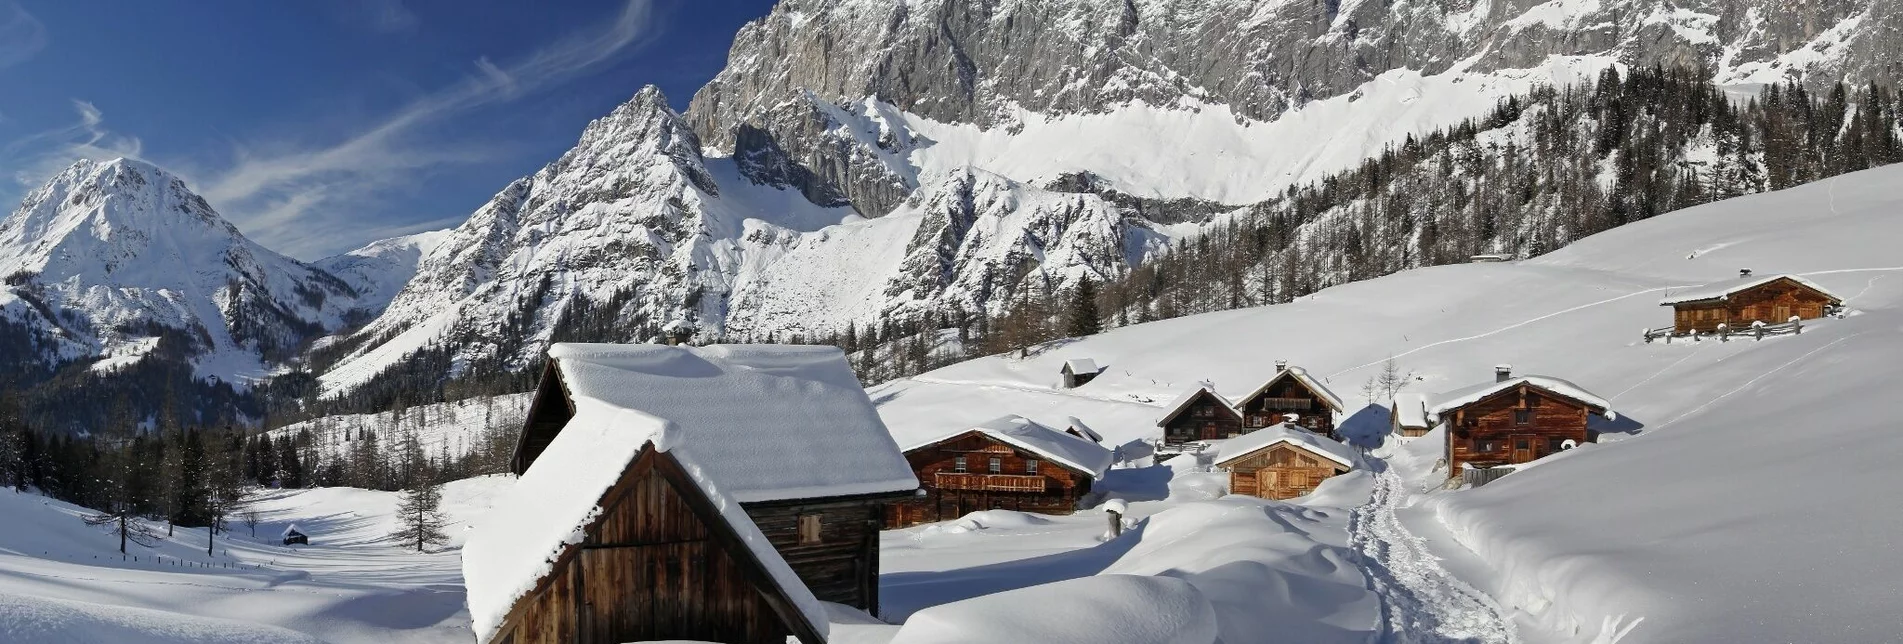 Schneeschuh Dureggrunde Schneeschuhtour - Touren-Impression #1 | © Erlebnisregion Schladming-Dachstein